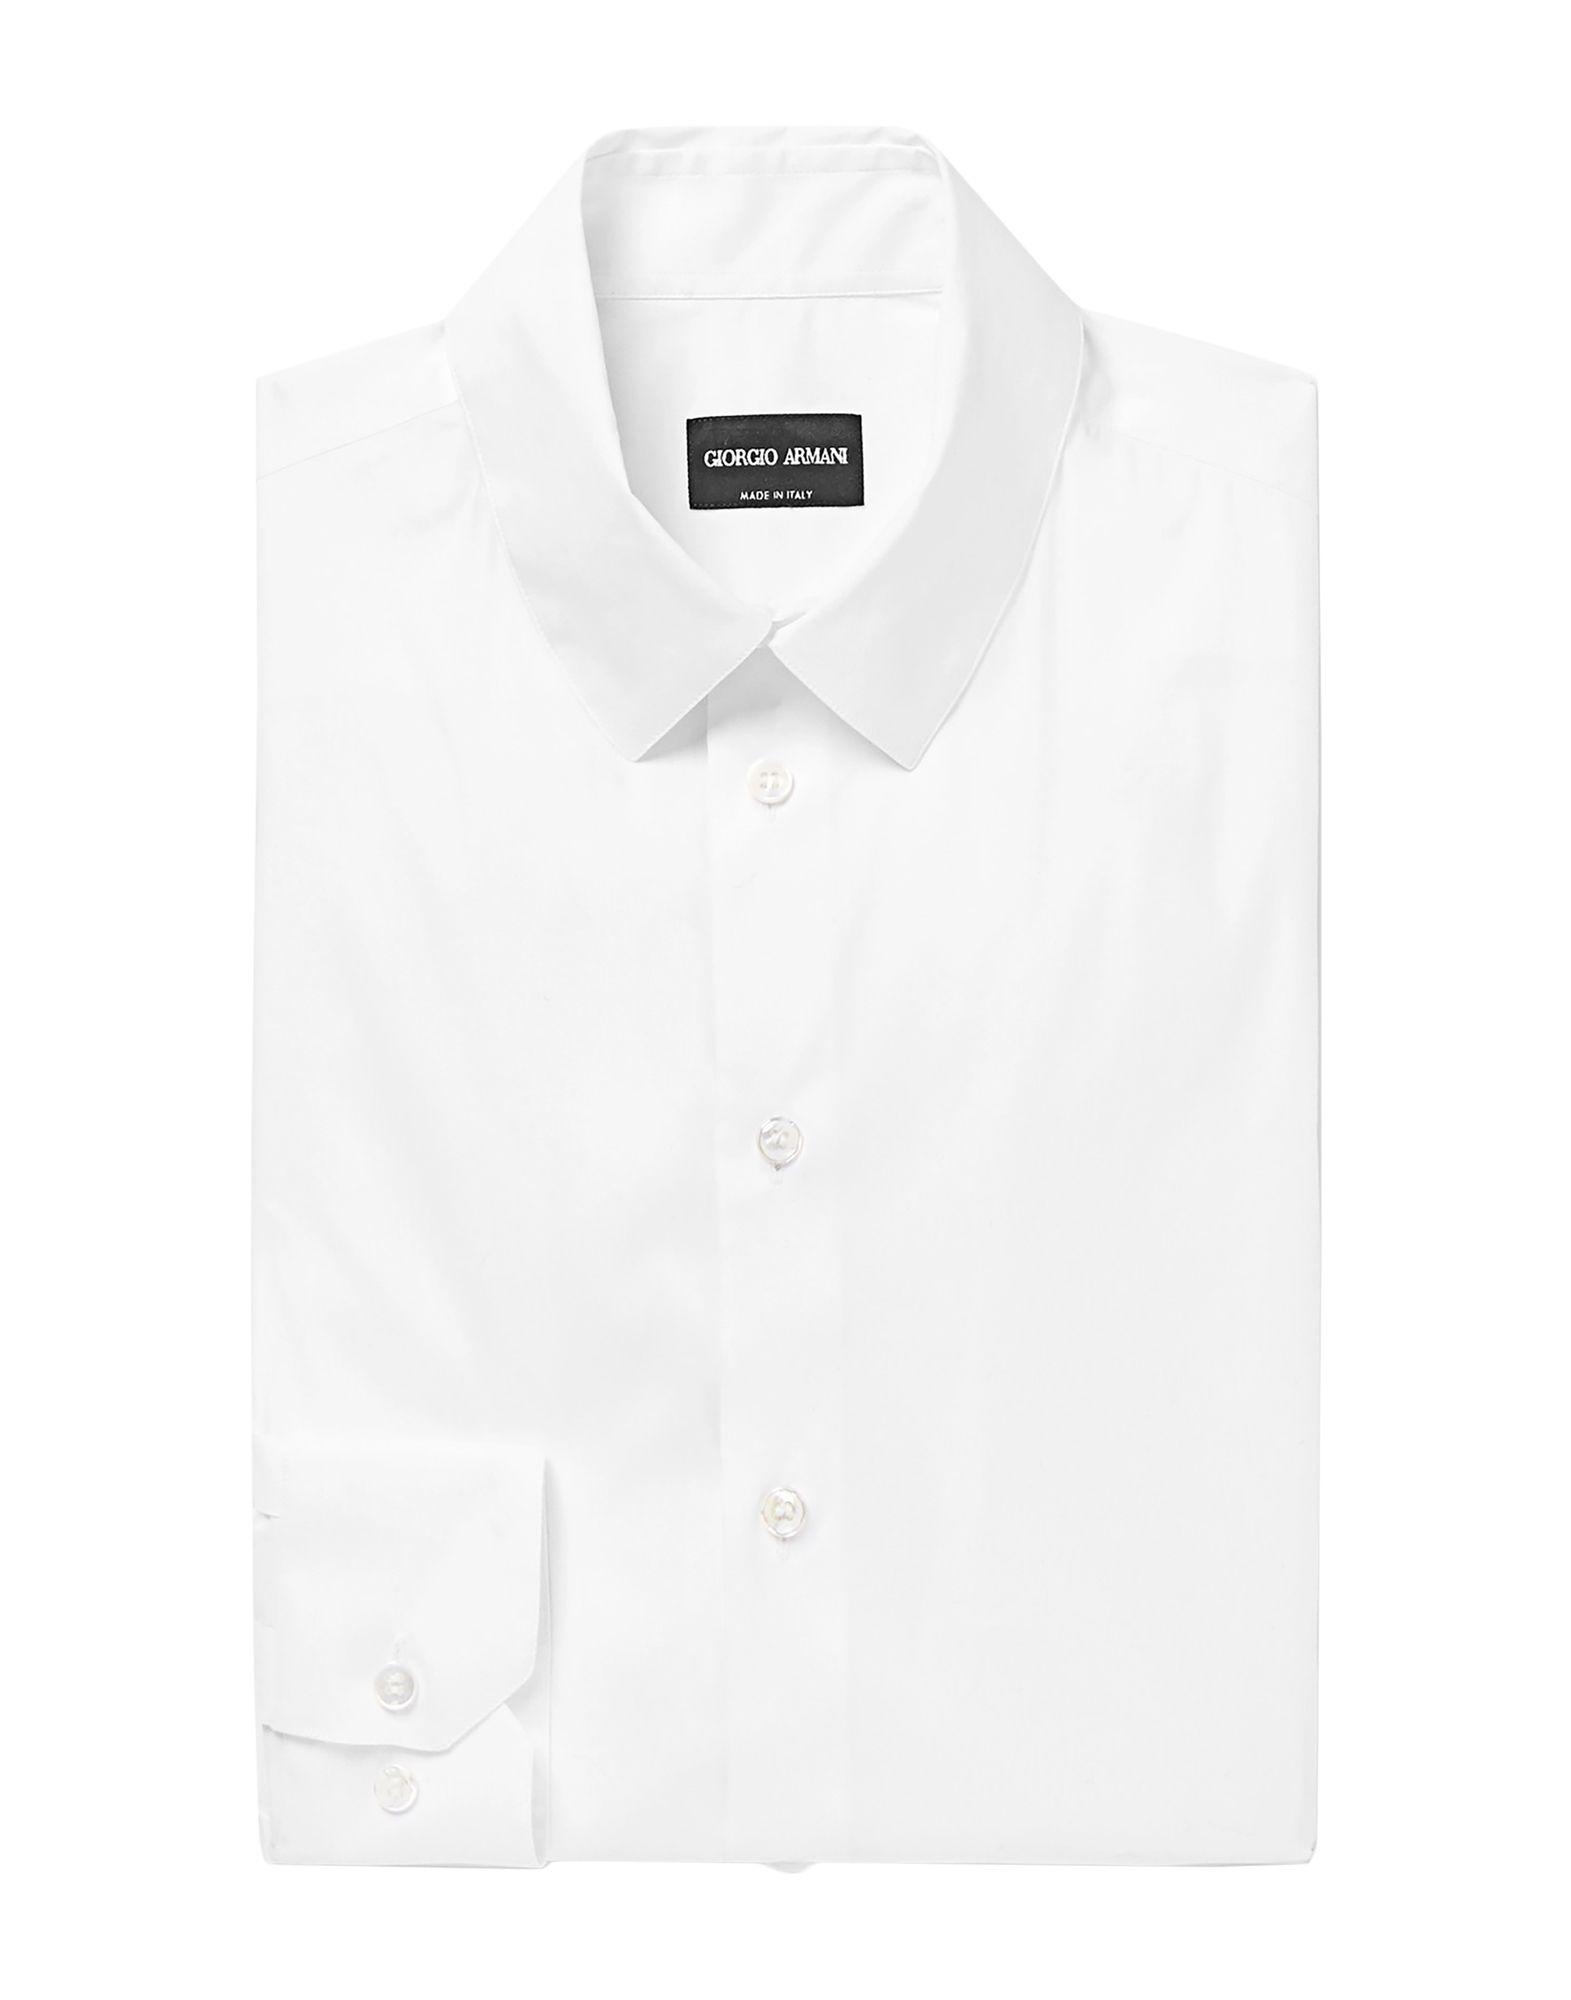 Giorgio Armani Shirt in White for Men - Lyst